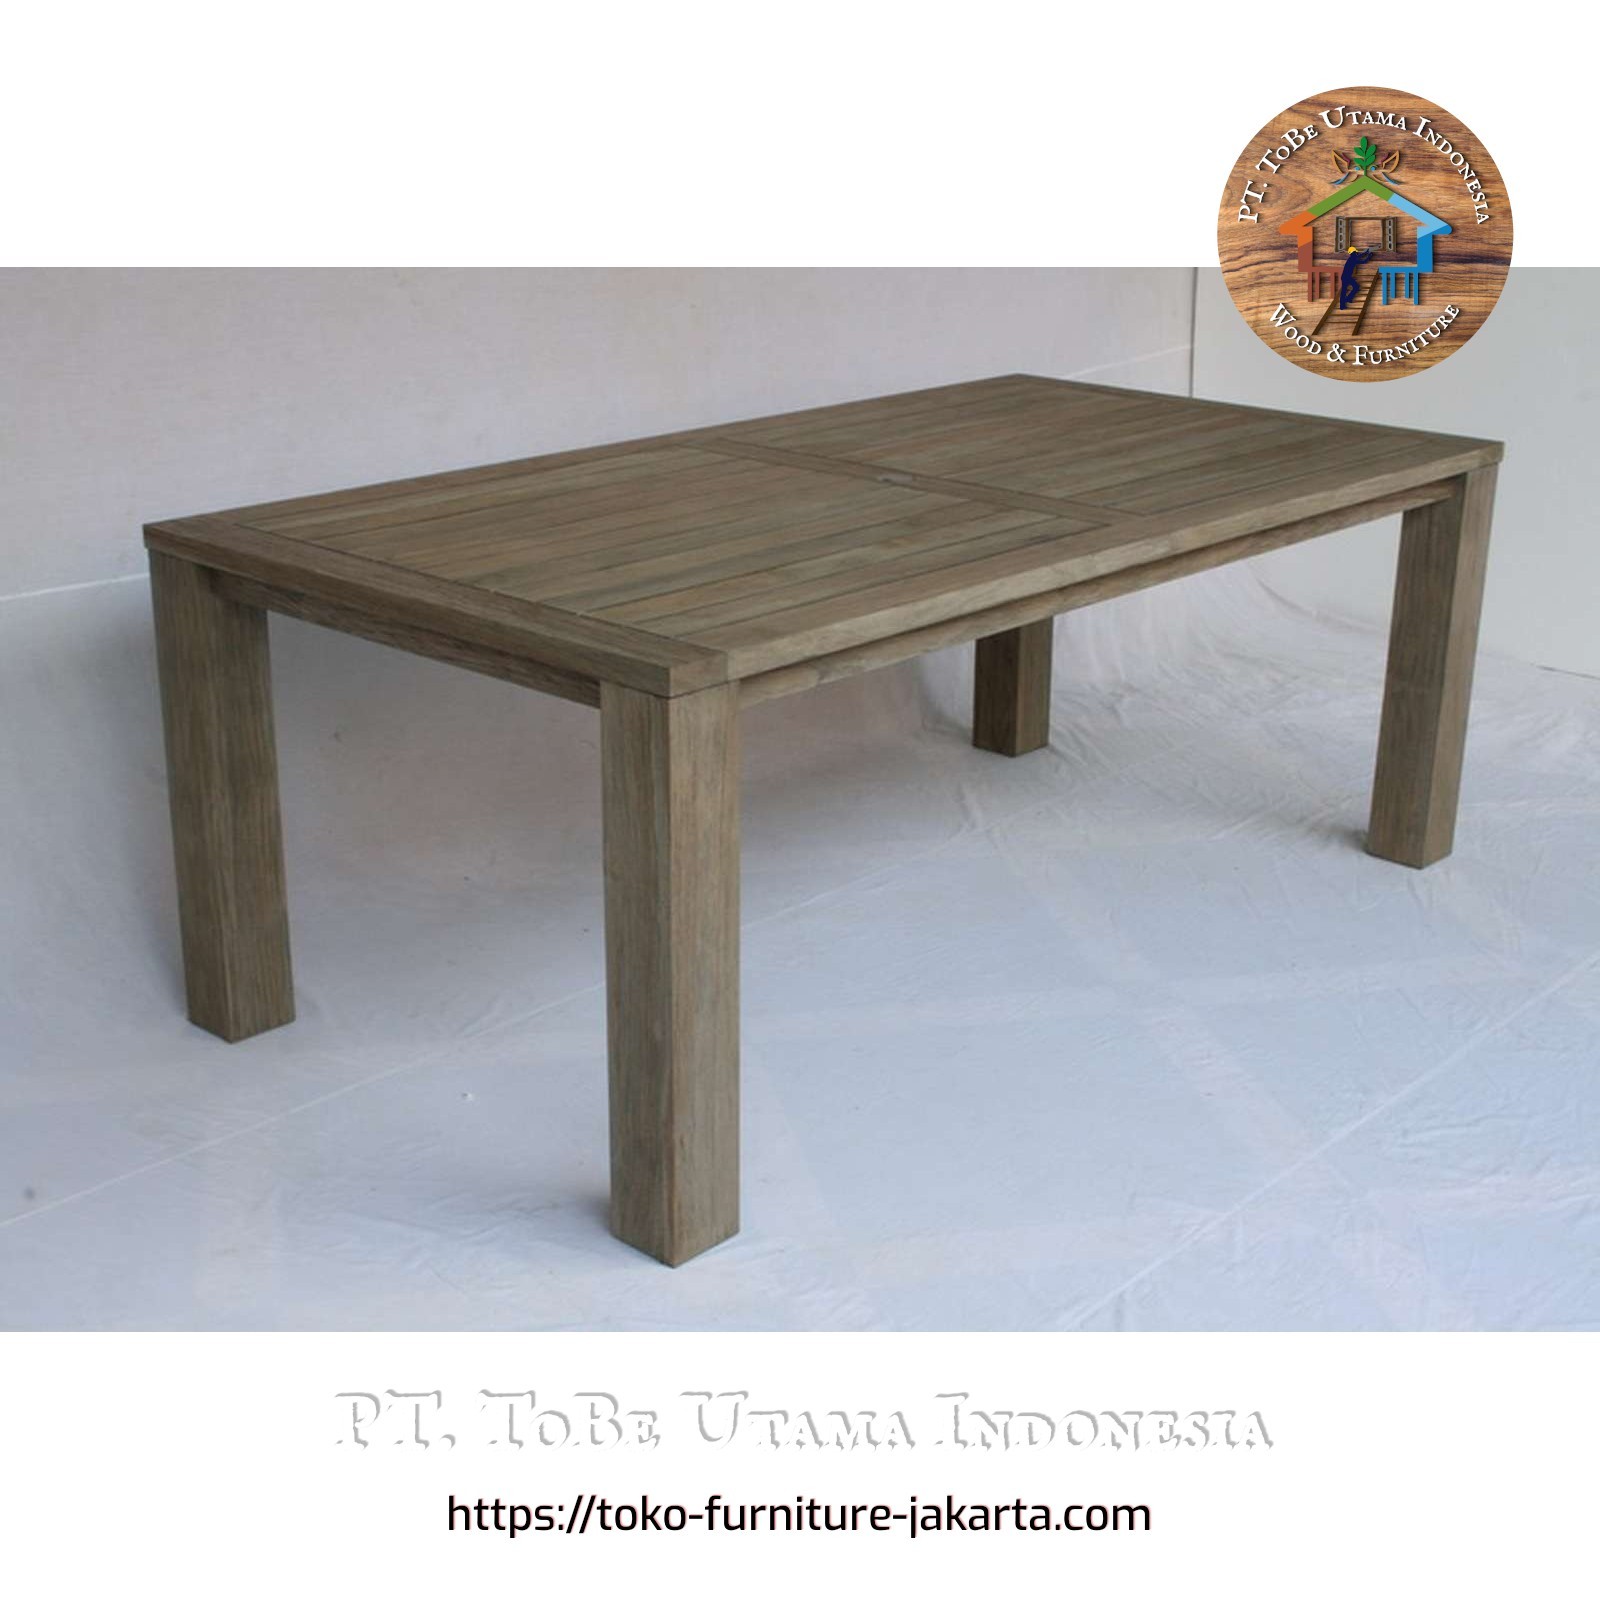 Dining Room - Dining Tables: KJ Teak Dark Dining Table made of teakwood, mahogany wood (image 1 of 1).